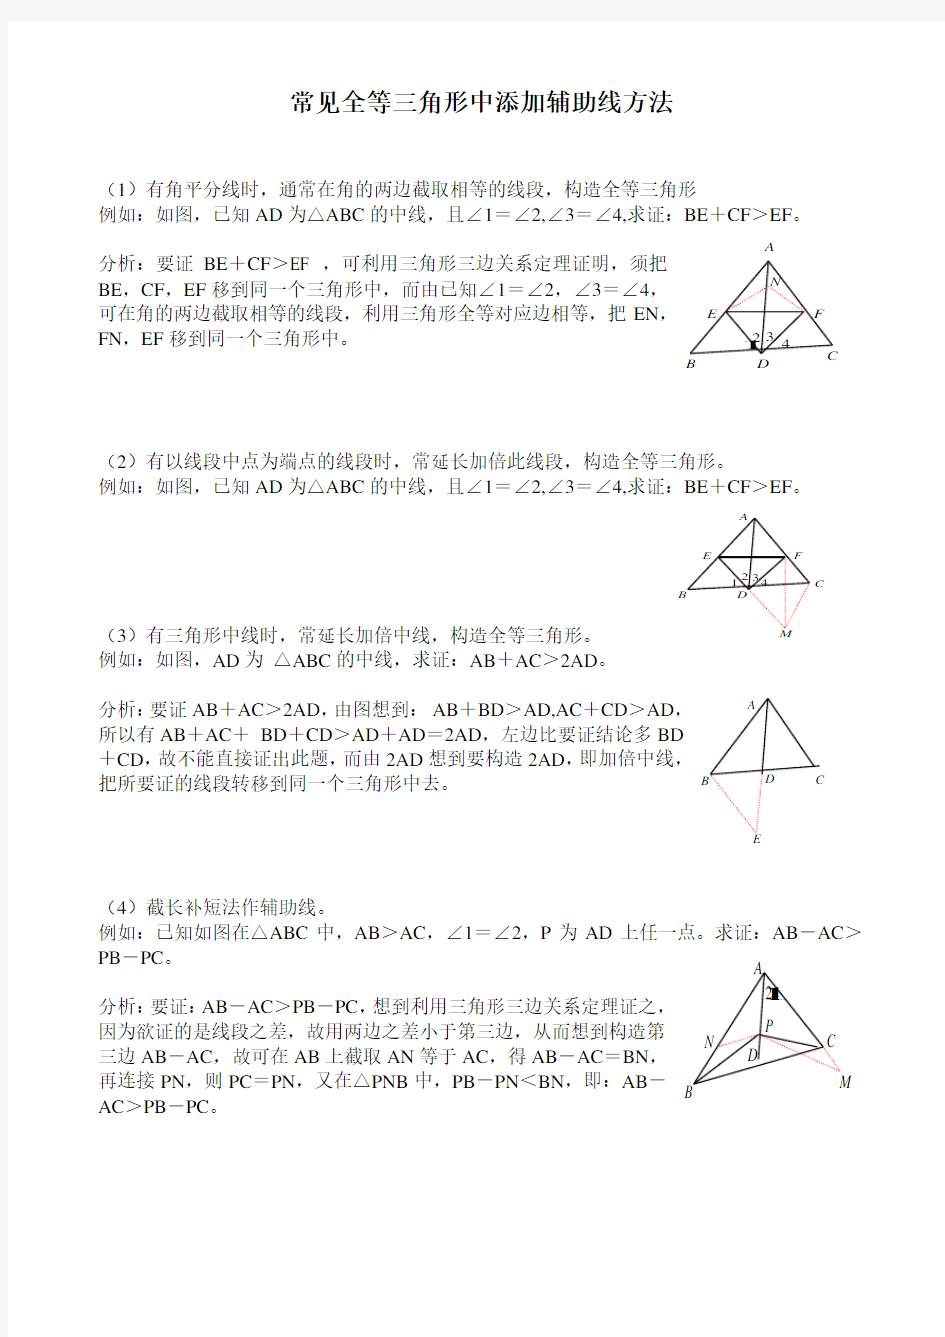 常见全等三角形中添加辅助线方法